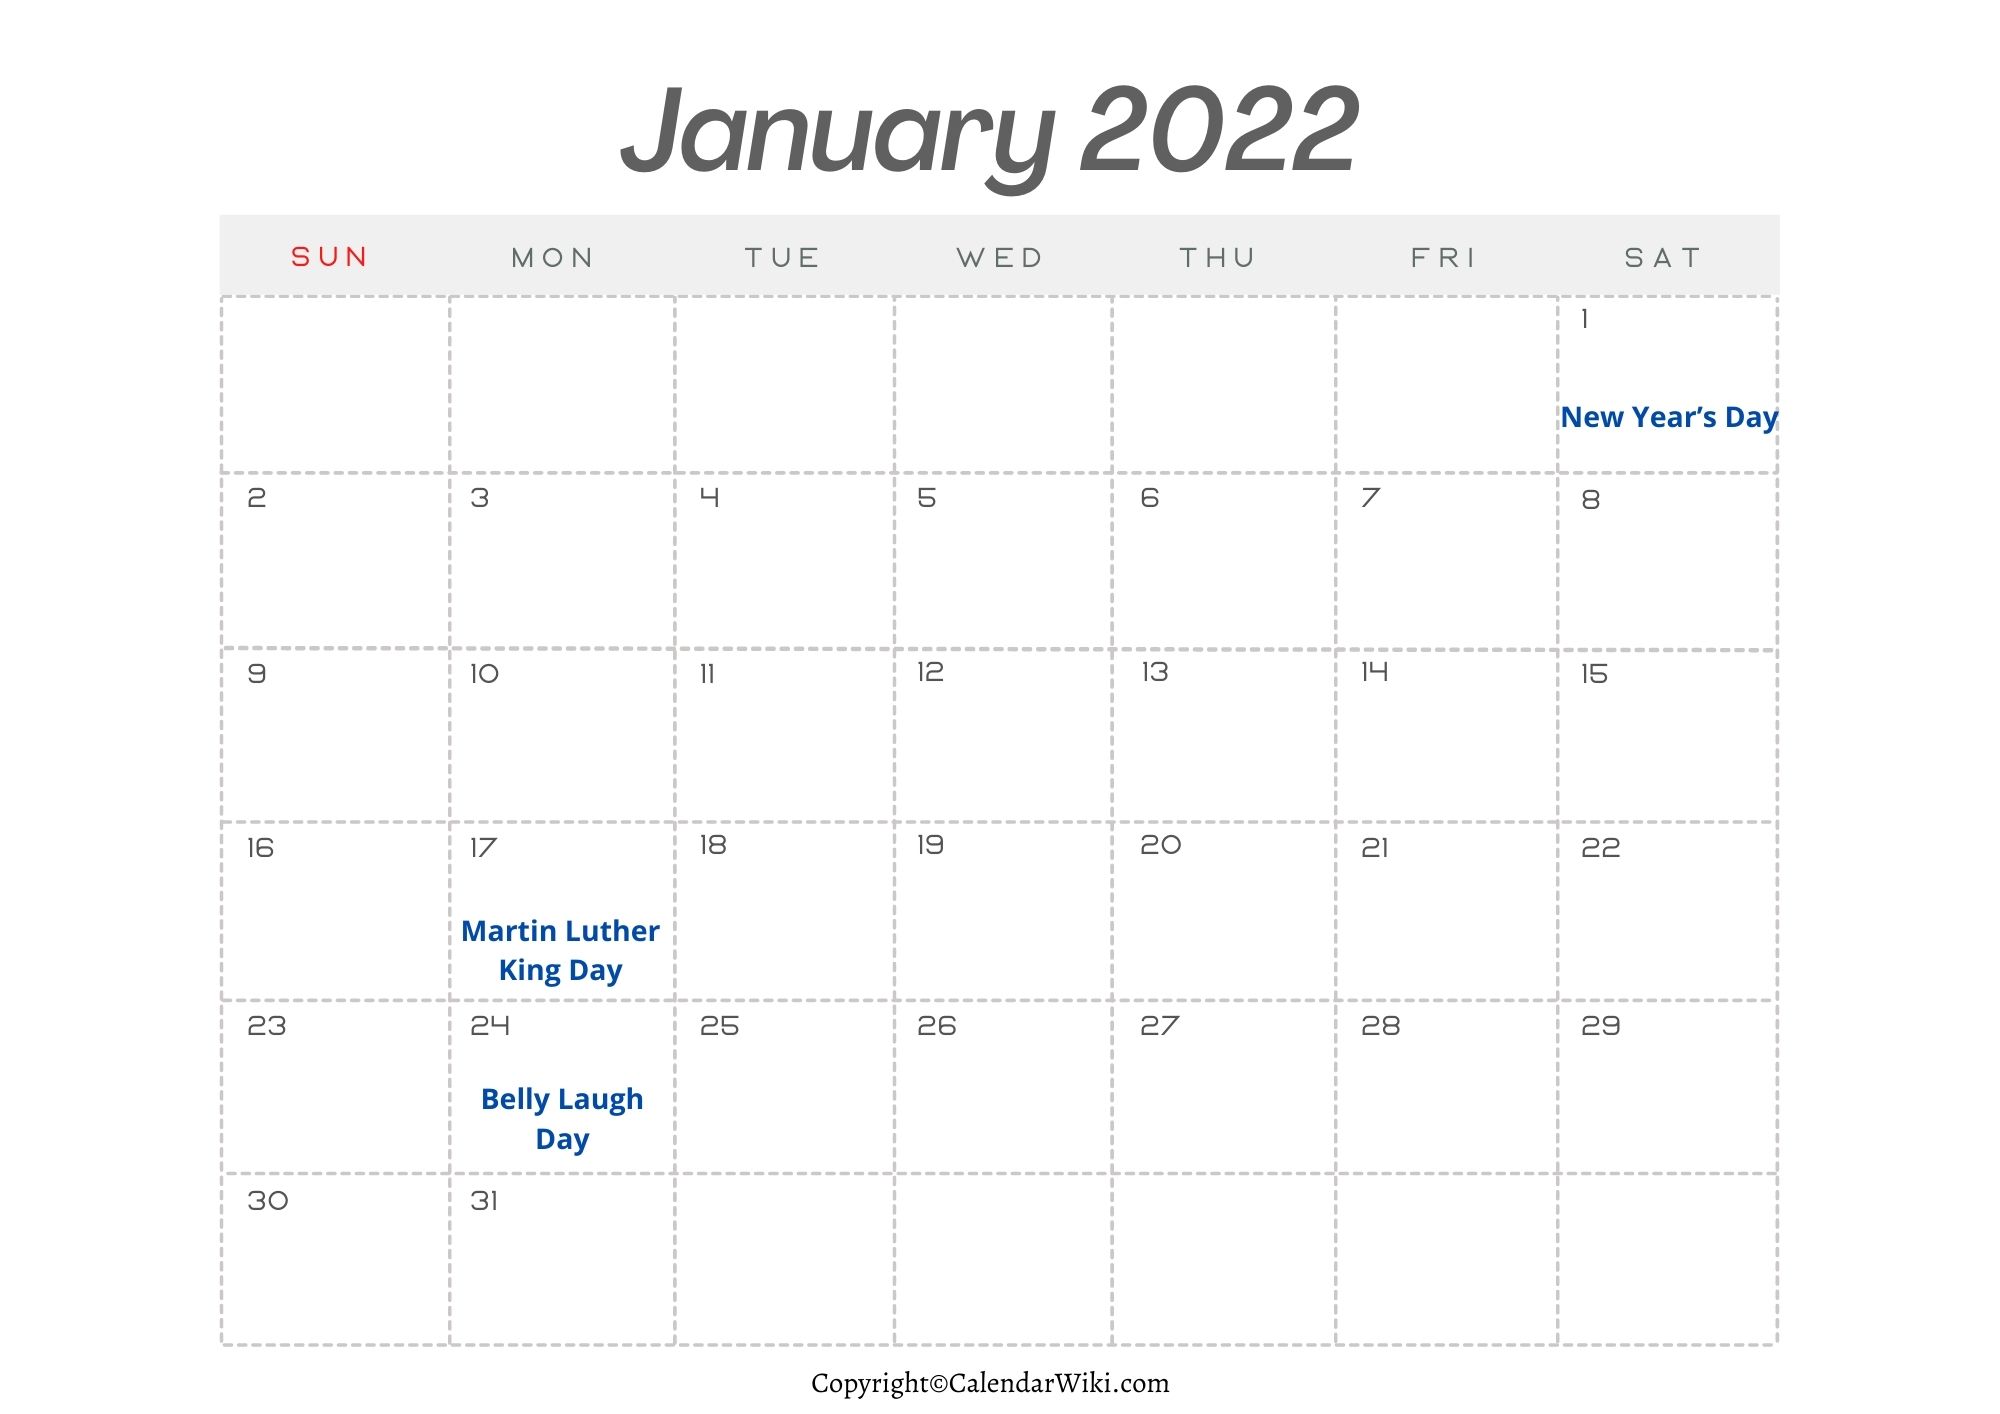 January Holidays 2022